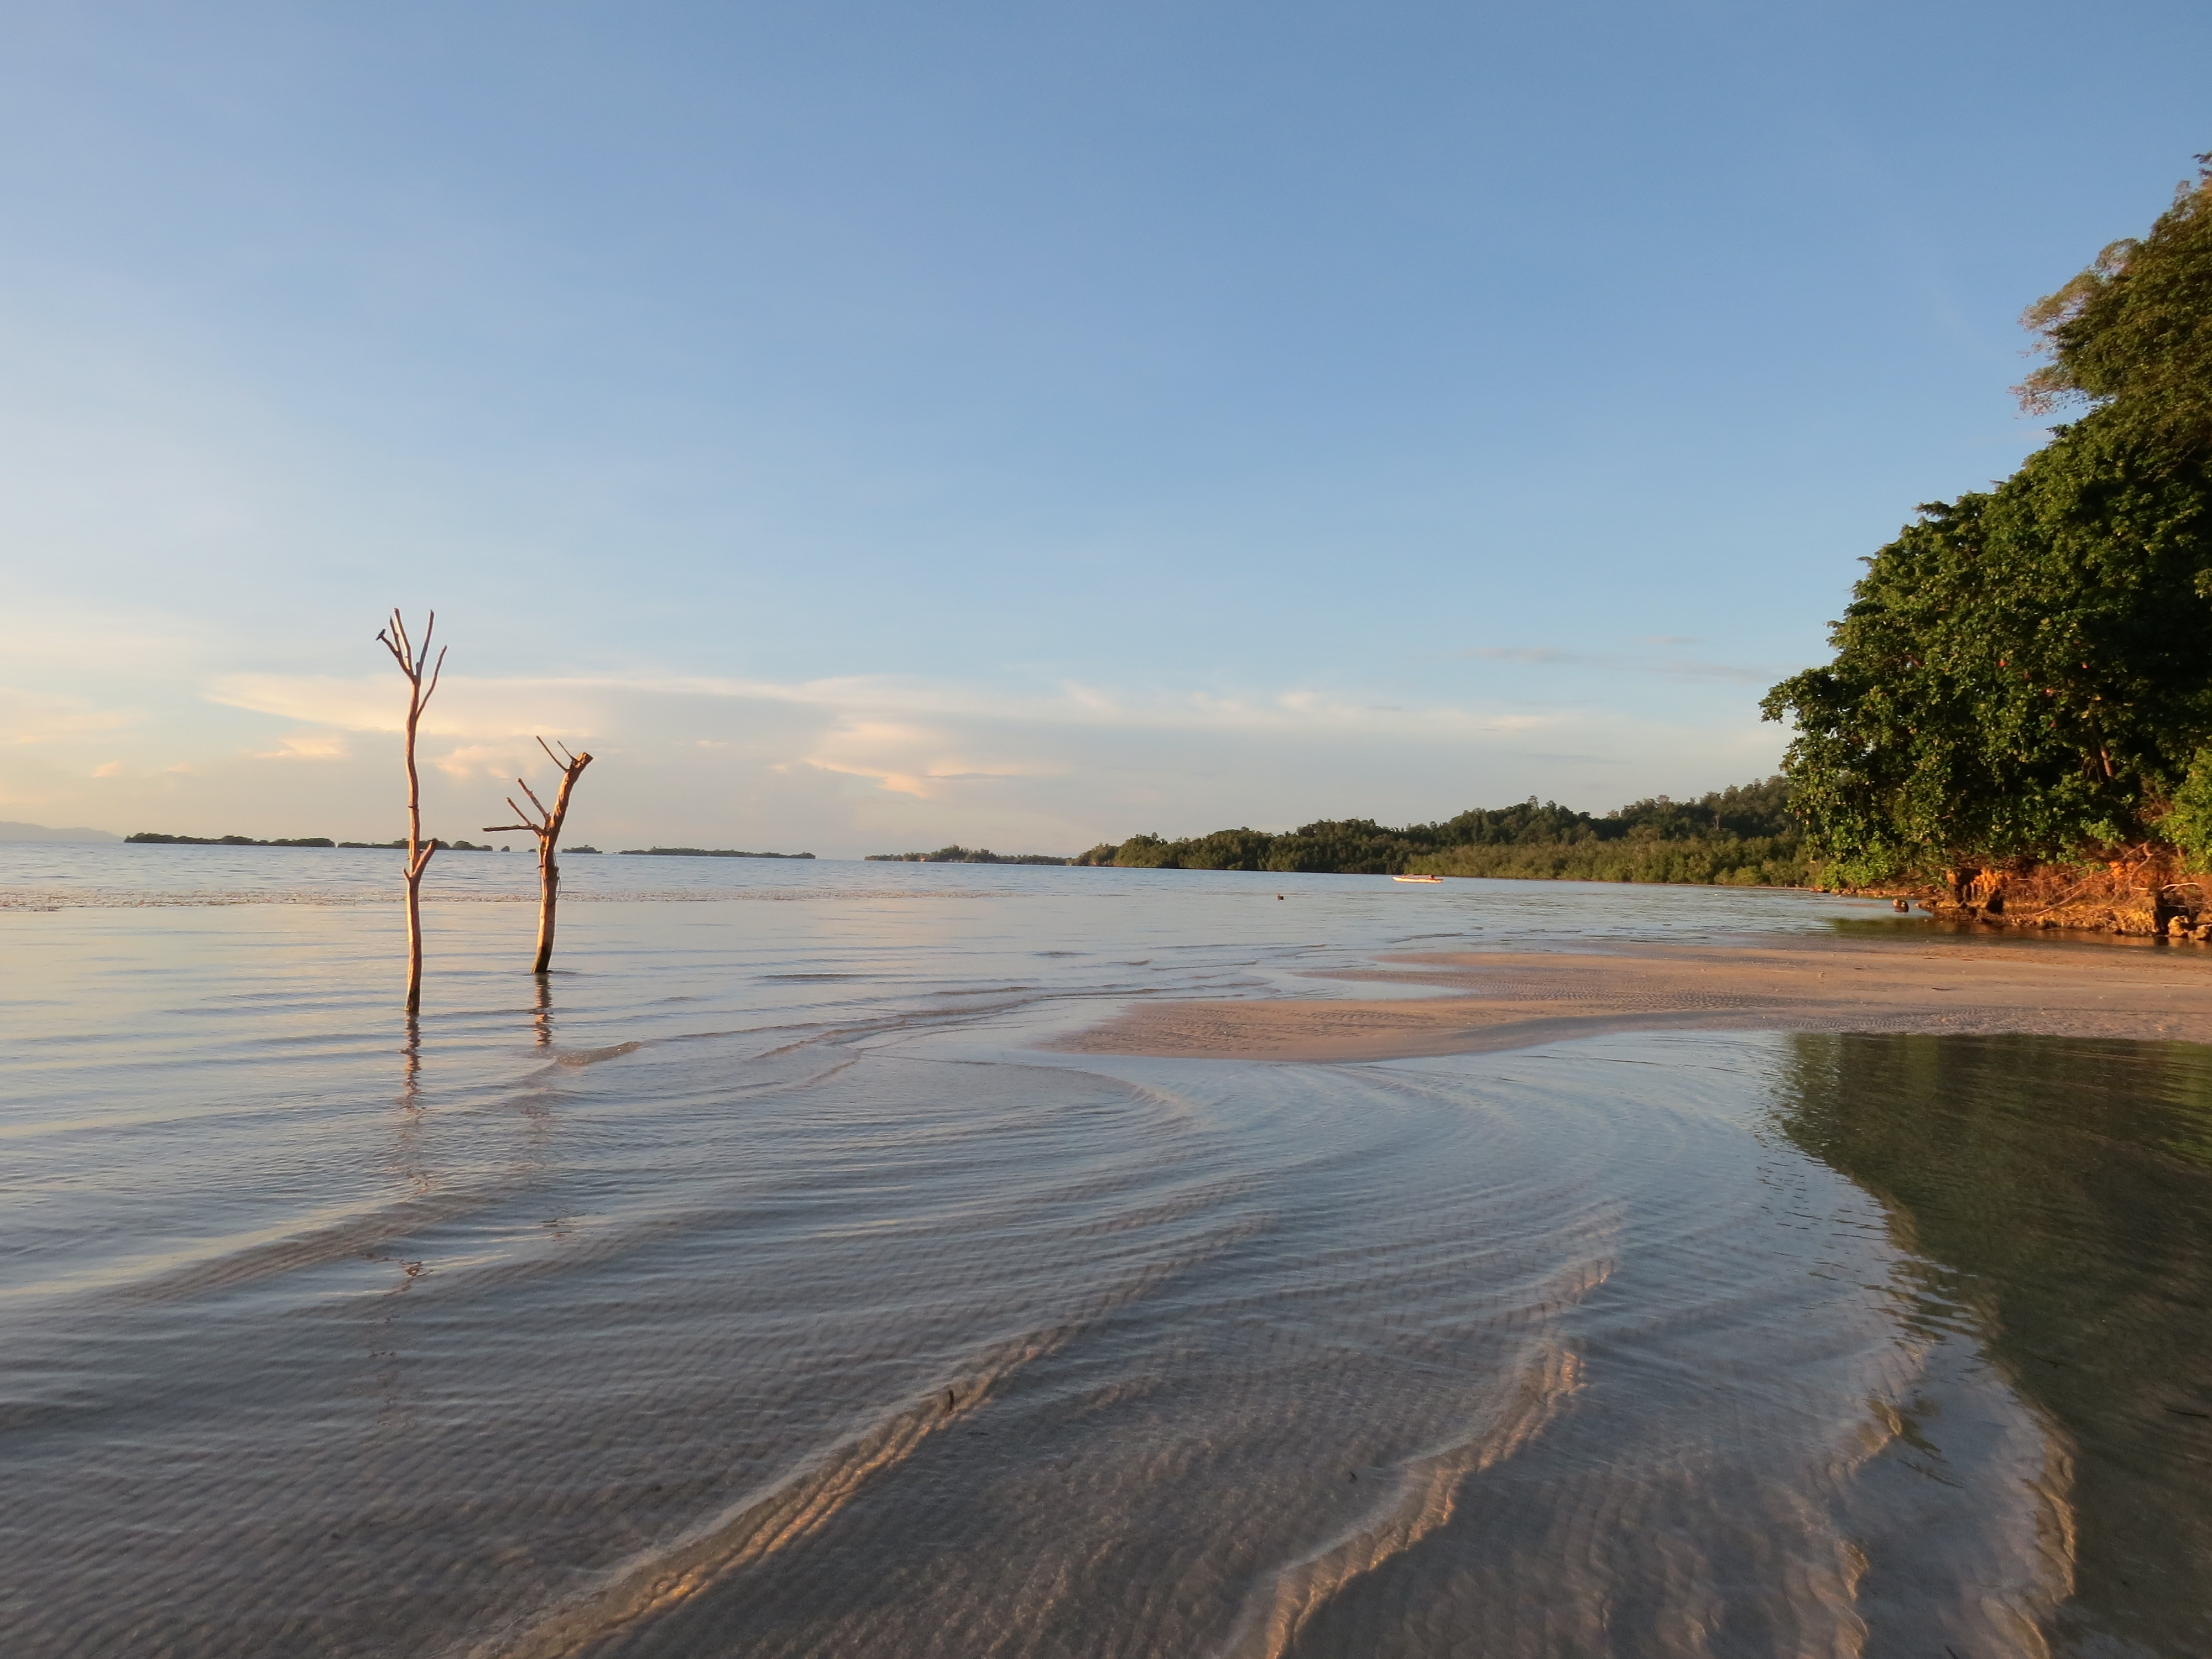 Sulawési Indonésie plage de rêve isolée